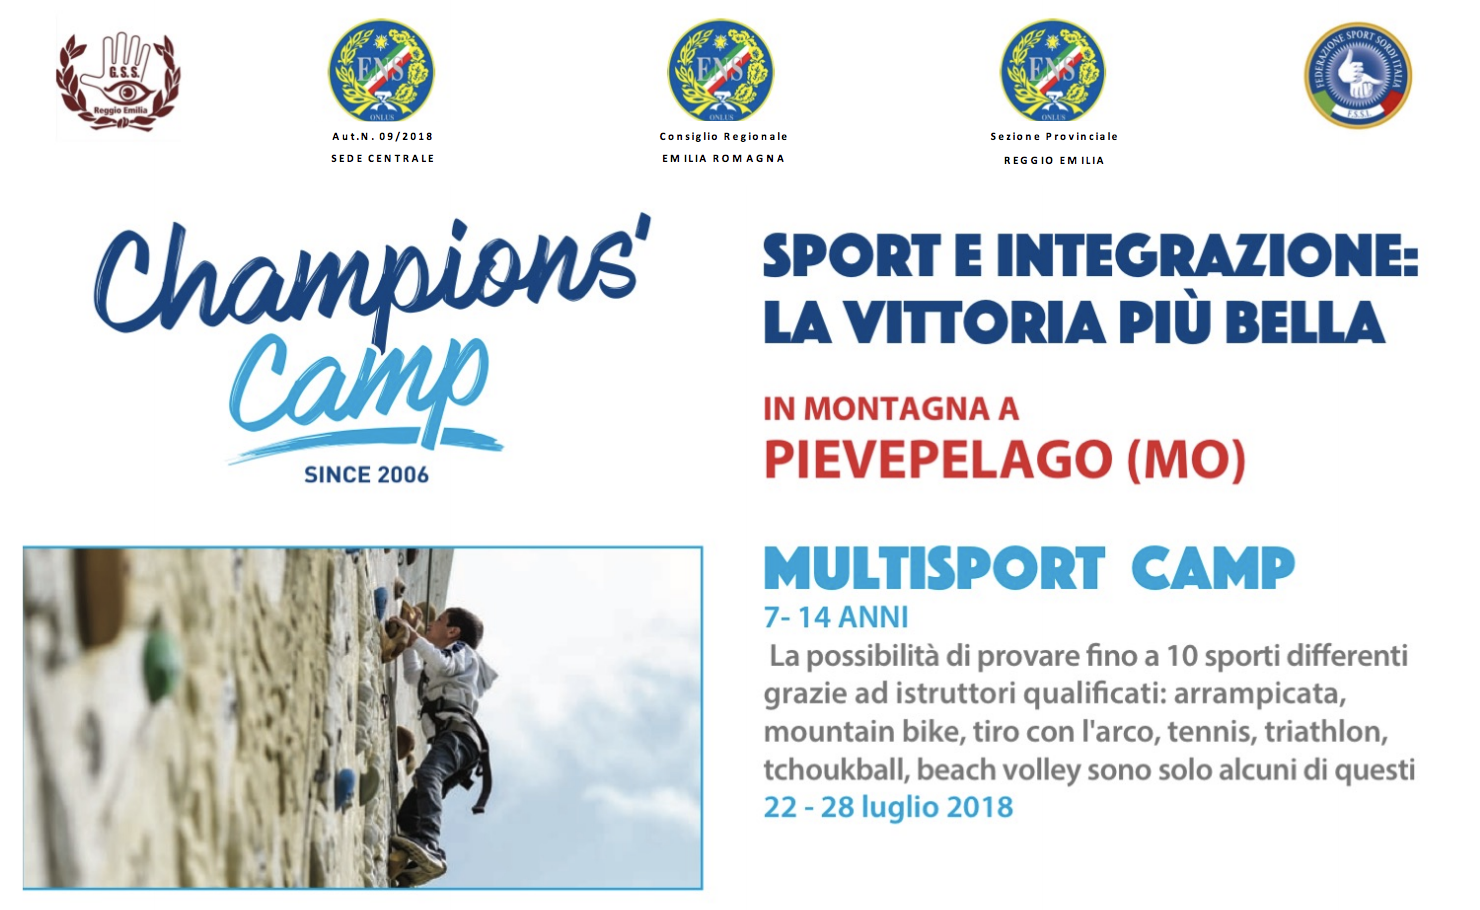 1-7 Luglio e 22-28 Luglio, Pievepelago (MO). Champions Camp, sport e integrazione: la vittoria più bella